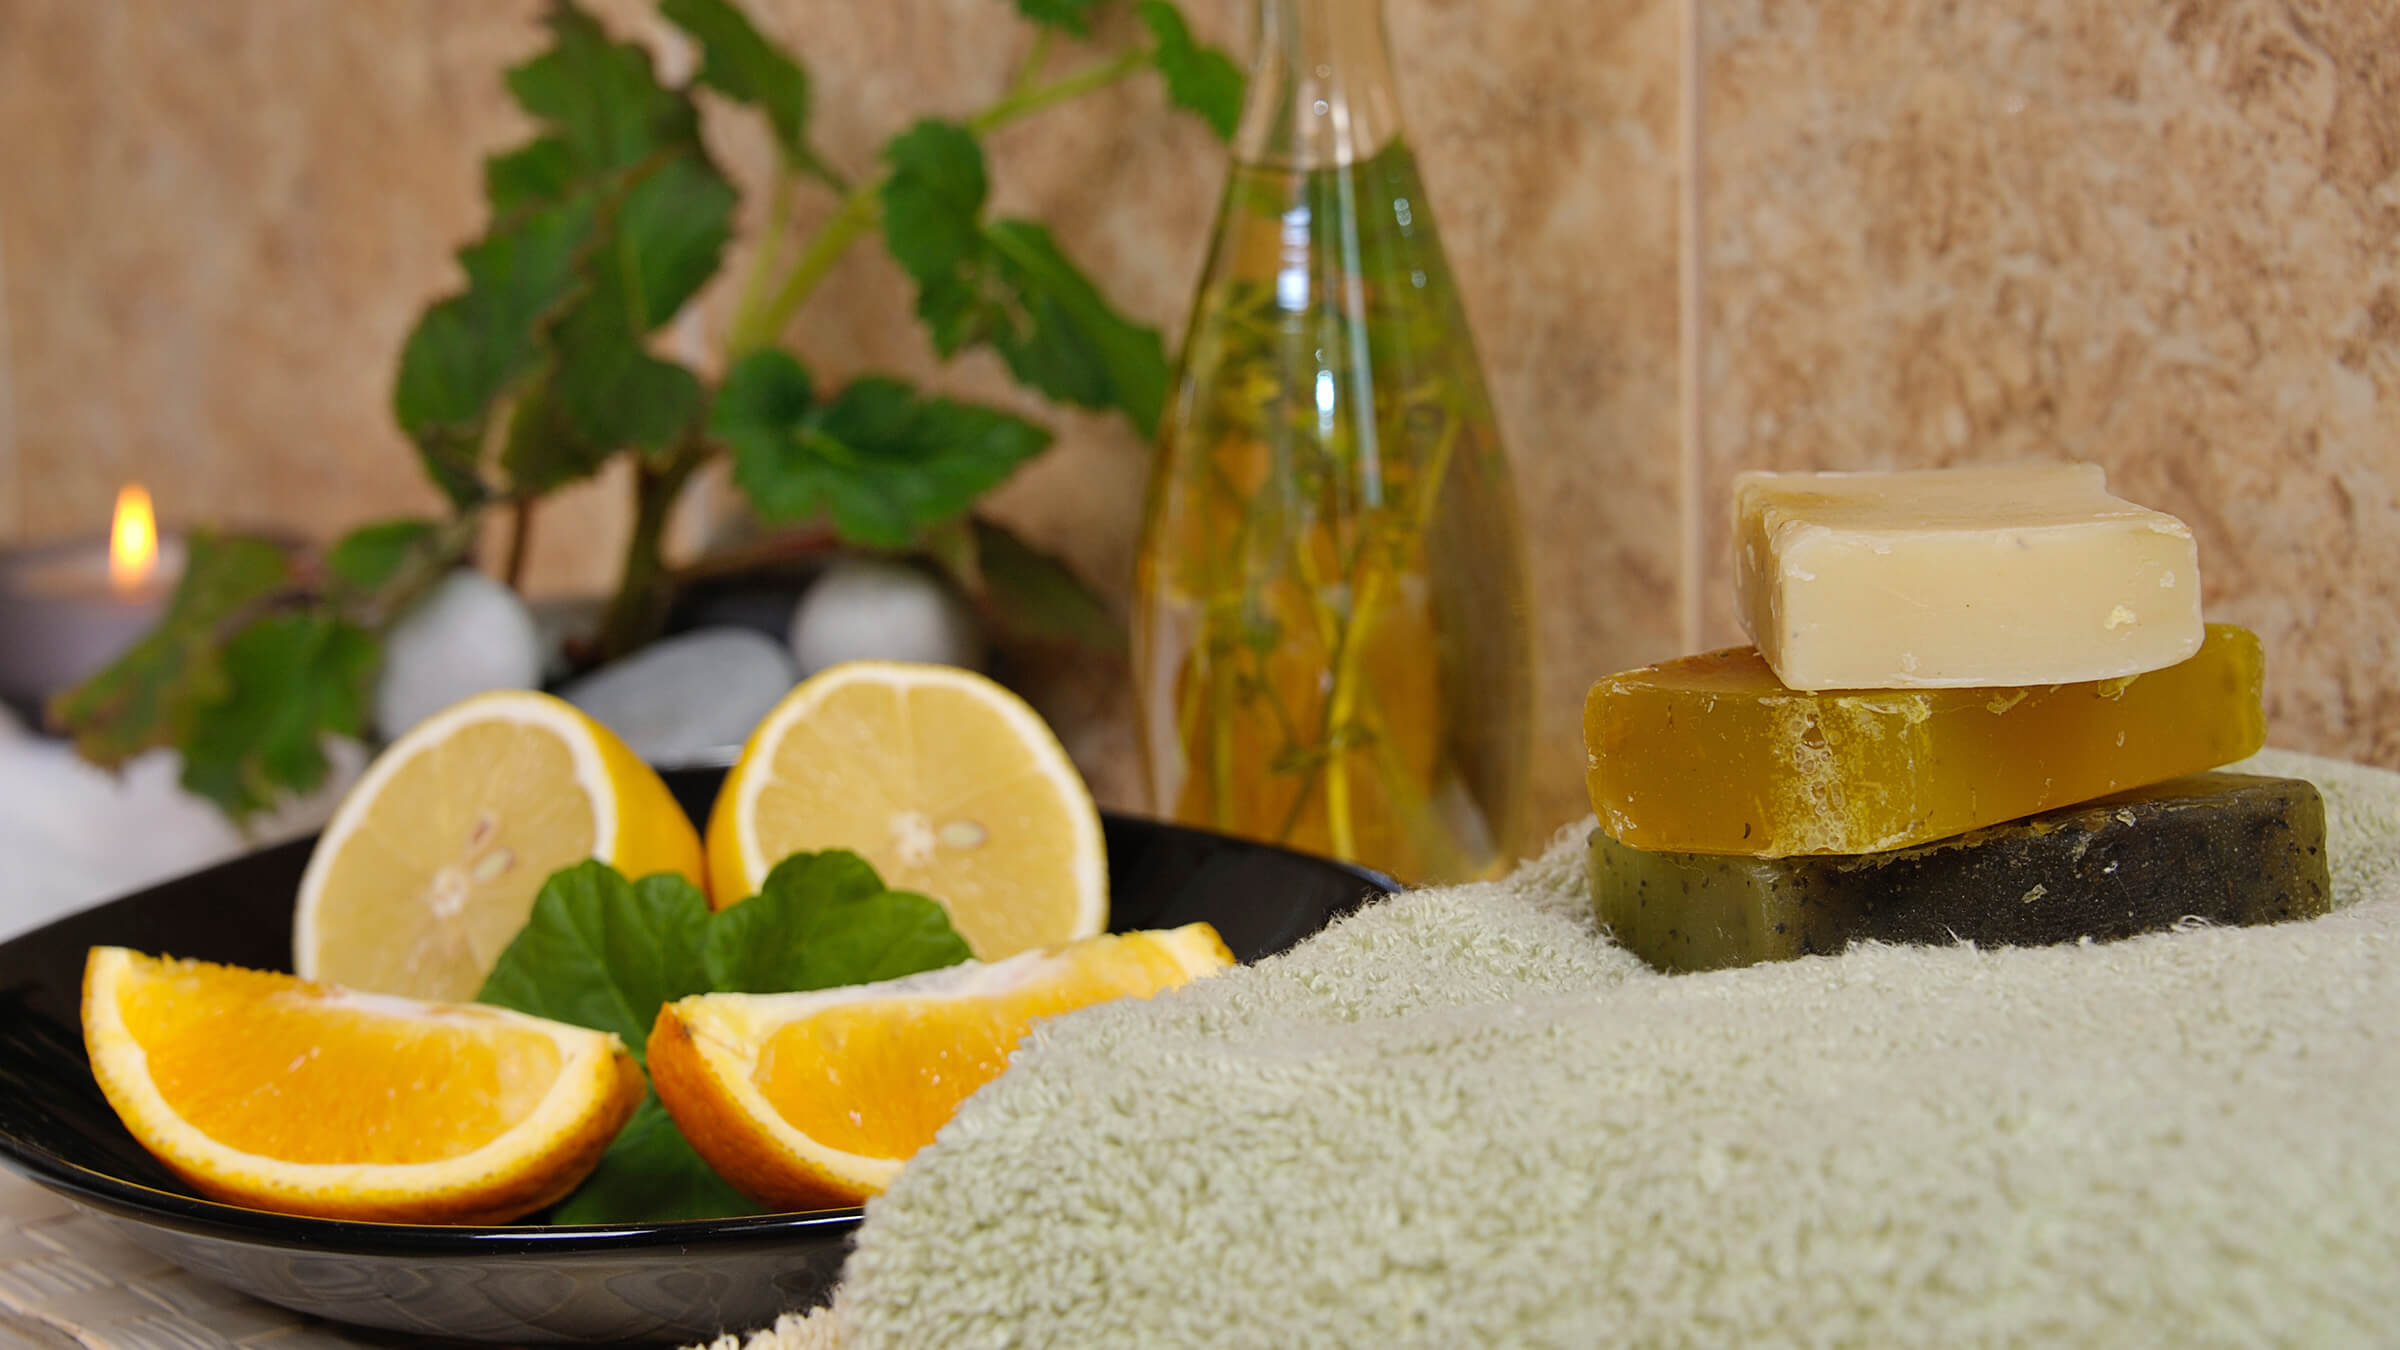 Orange Foaming Hand Soap Recipe - Citrus Vanilla Scent for Kids